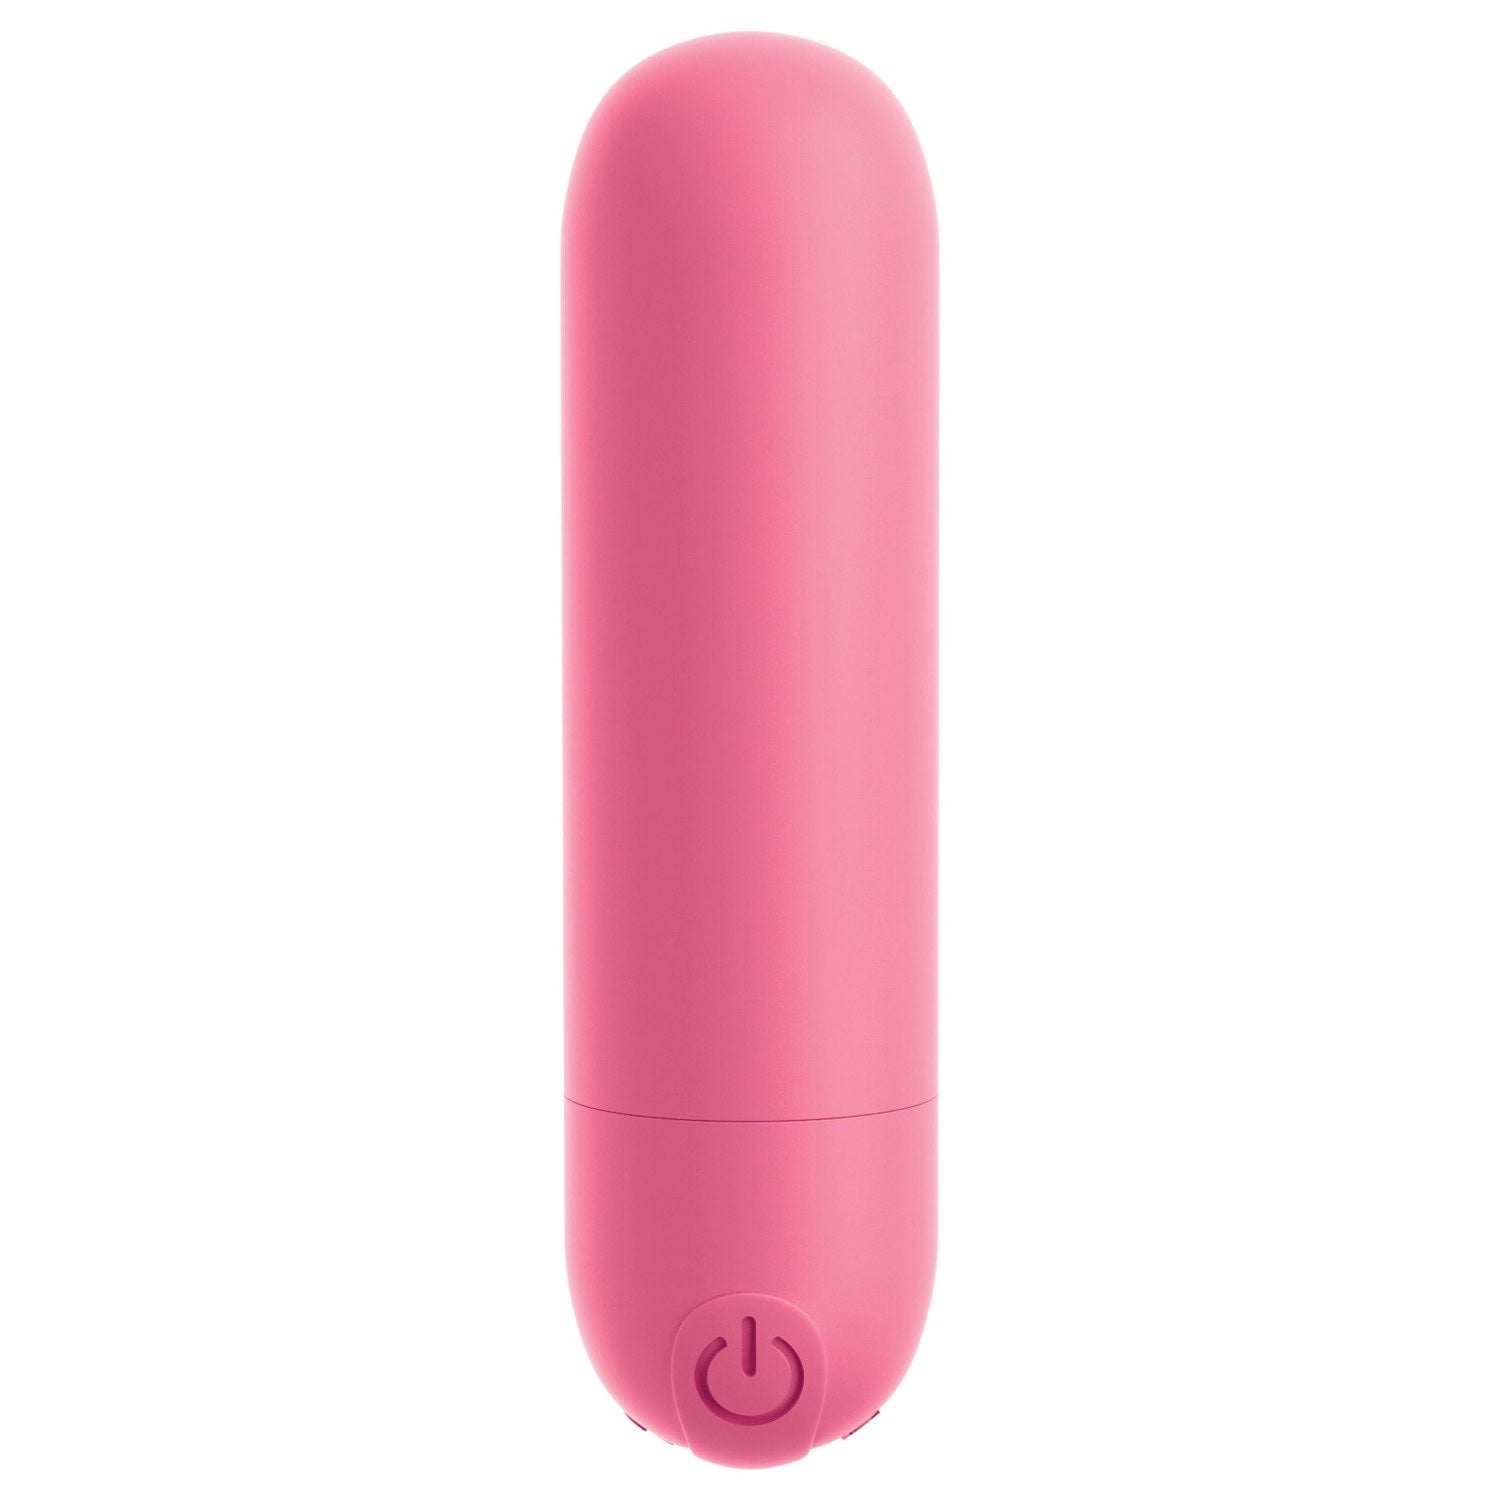 我的天啊！ 我的天啊！ Bullets #Play - 粉色 USB 可充电子弹头 by Pipedream